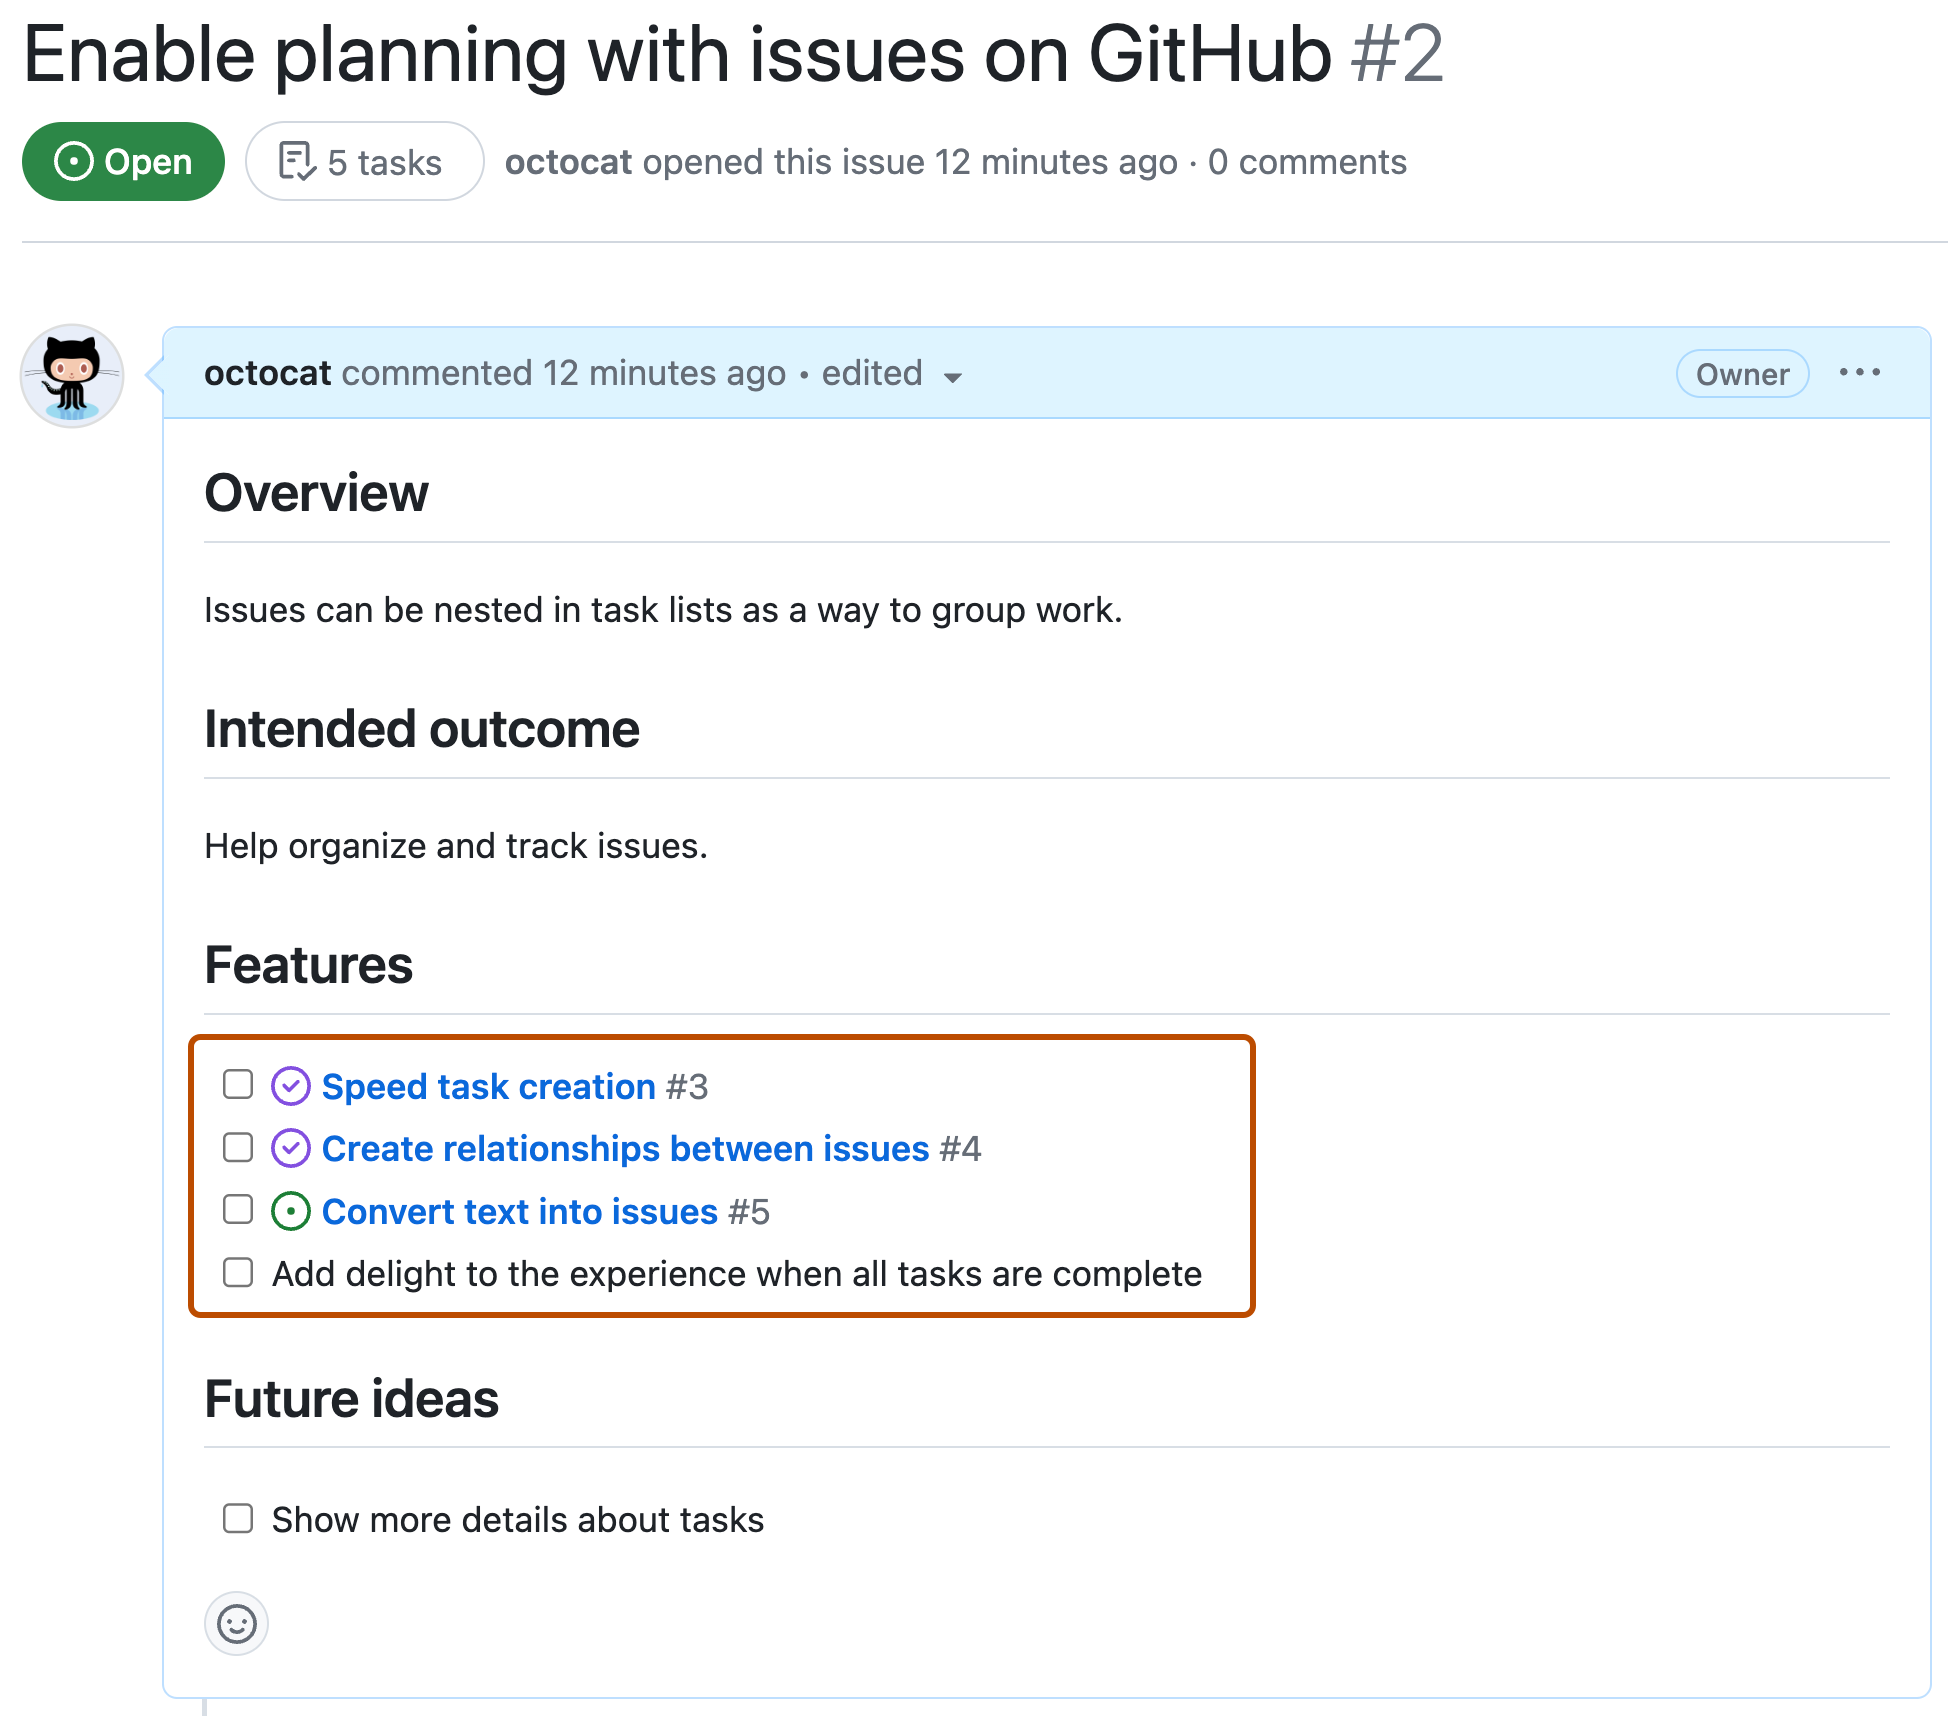 Снимок экрана: проблема с GitHub с списком задач в заголовке "Функции". Некоторые элементы проверяются как выполненные, другие отменяют проверку как неуправляемые. Три элемента списка связаны с другими данными GitHub Issues.